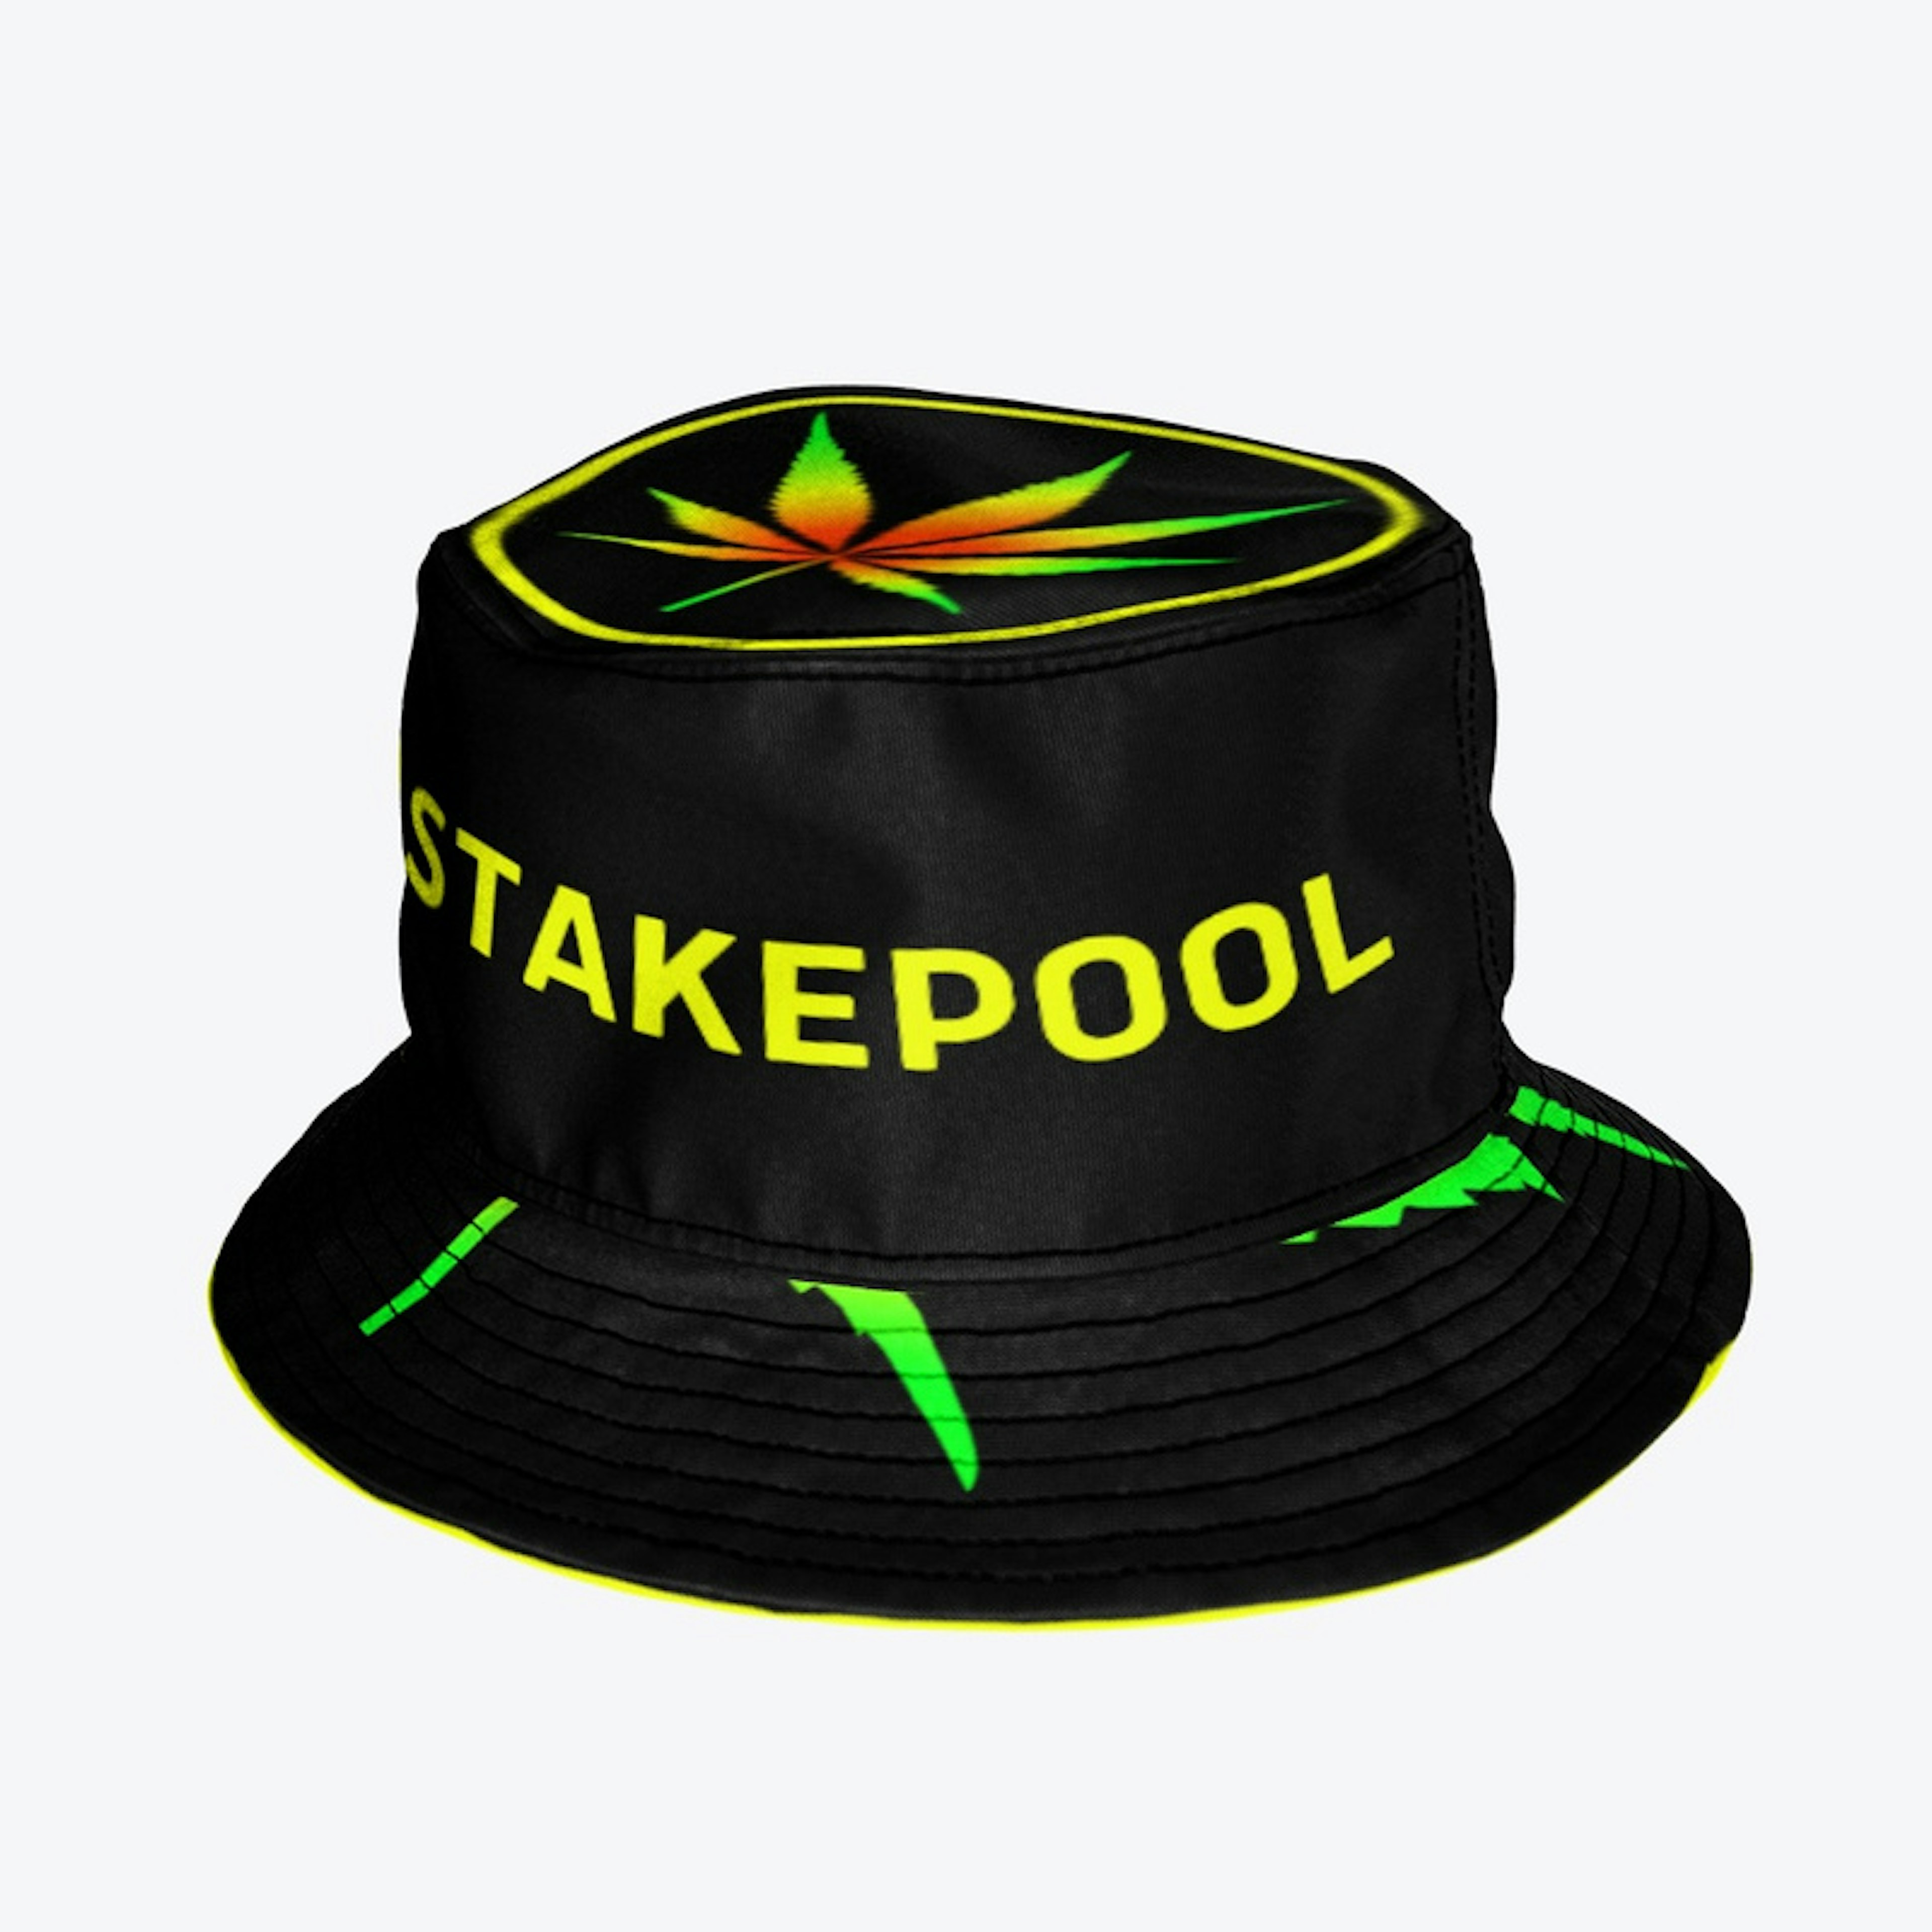 WEED Stakepool Logo